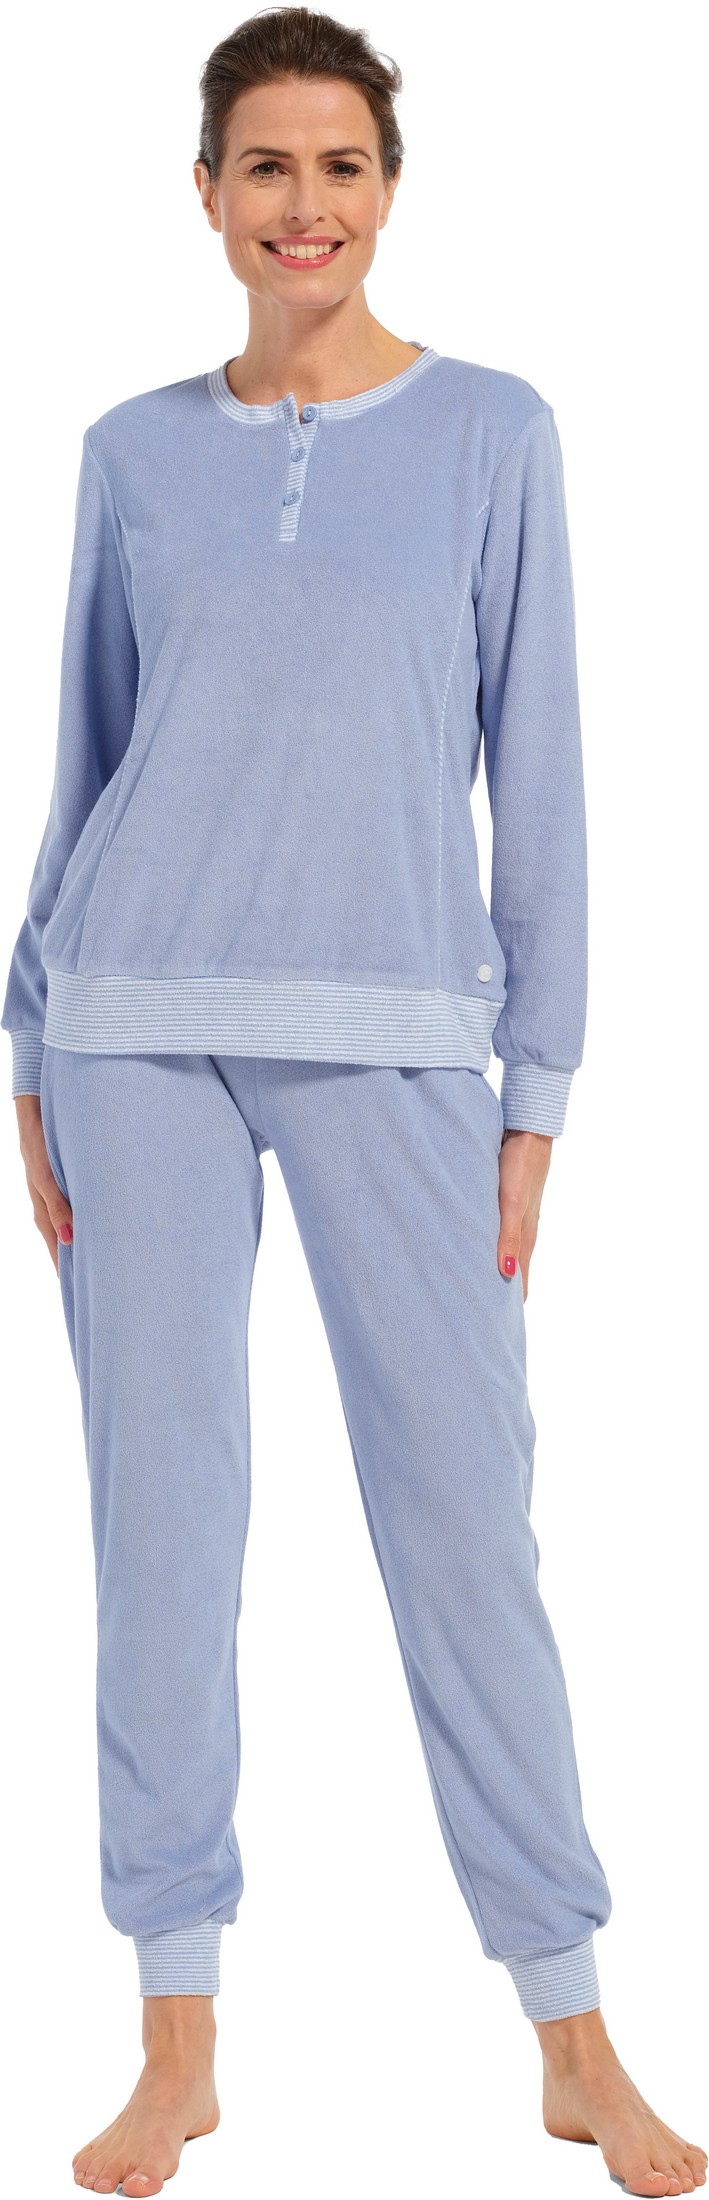 Pastunette dames badstof pyjama 20232-174-4 - Blauw - 44